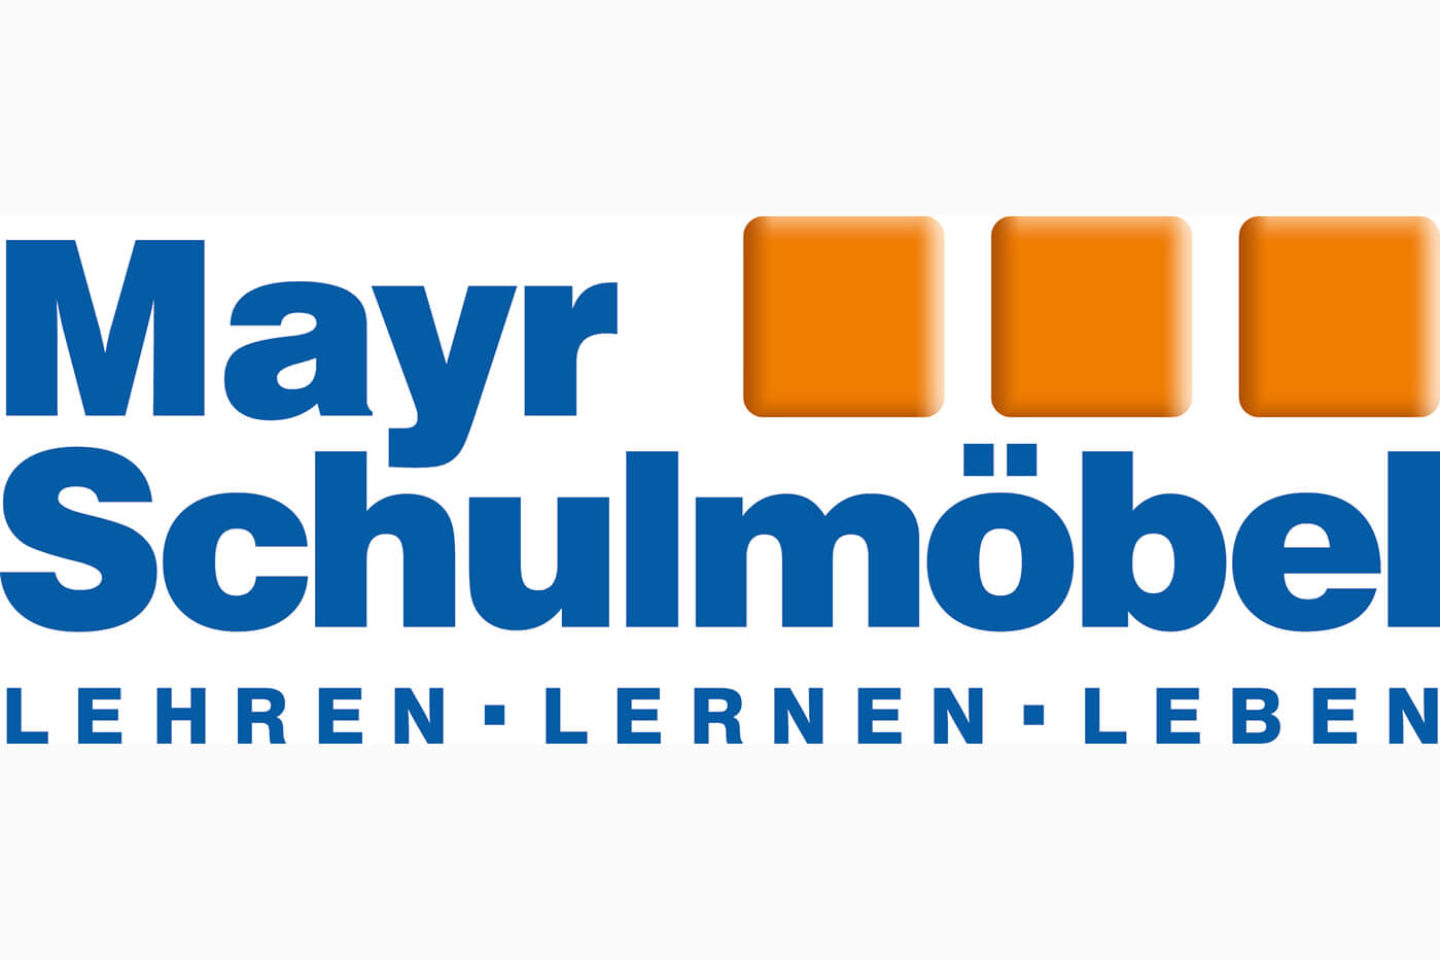 Mayr Schulmöbel